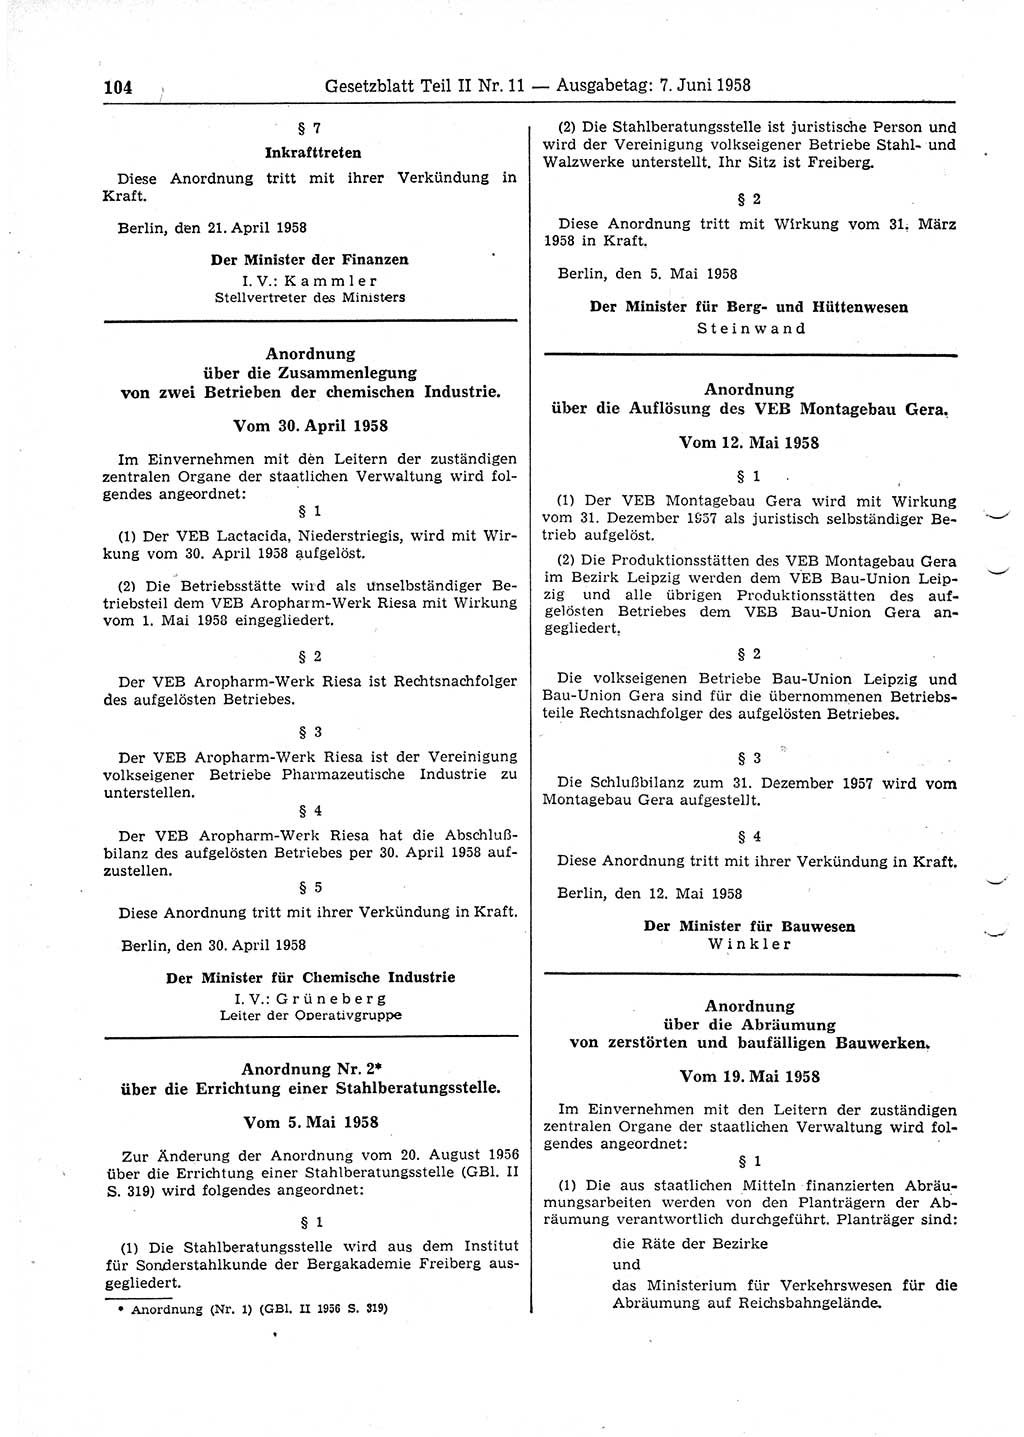 Gesetzblatt (GBl.) der Deutschen Demokratischen Republik (DDR) Teil ⅠⅠ 1958, Seite 104 (GBl. DDR ⅠⅠ 1958, S. 104)